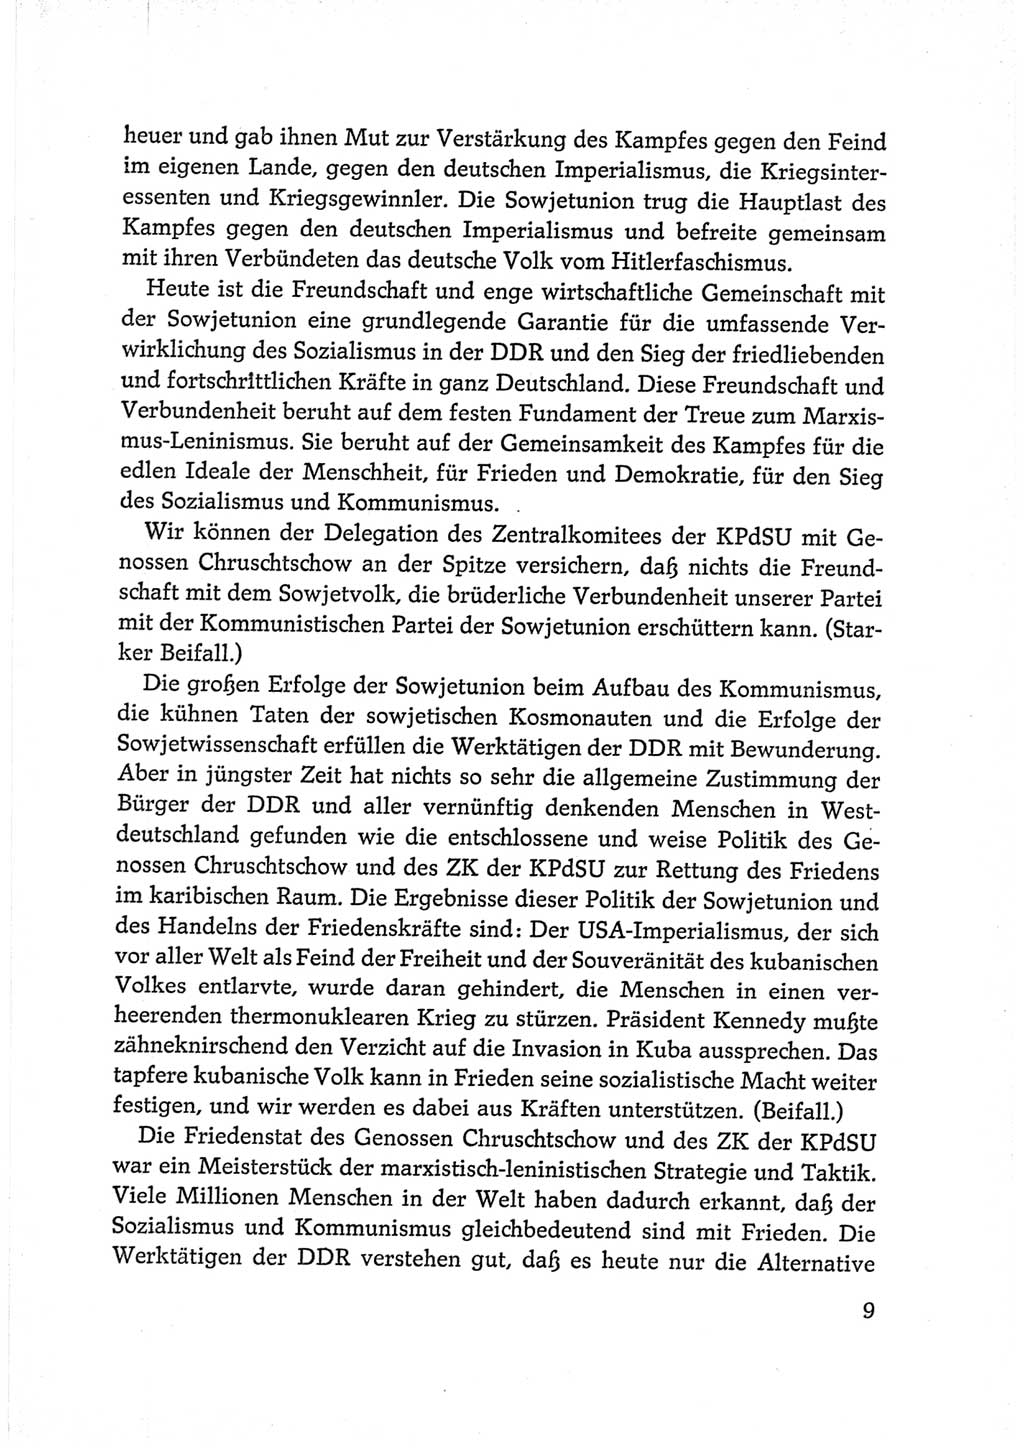 Protokoll der Verhandlungen des Ⅵ. Parteitages der Sozialistischen Einheitspartei Deutschlands (SED) [Deutsche Demokratische Republik (DDR)] 1963, Band Ⅱ, Seite 9 (Prot. Verh. Ⅵ. PT SED DDR 1963, Bd. Ⅱ, S. 9)